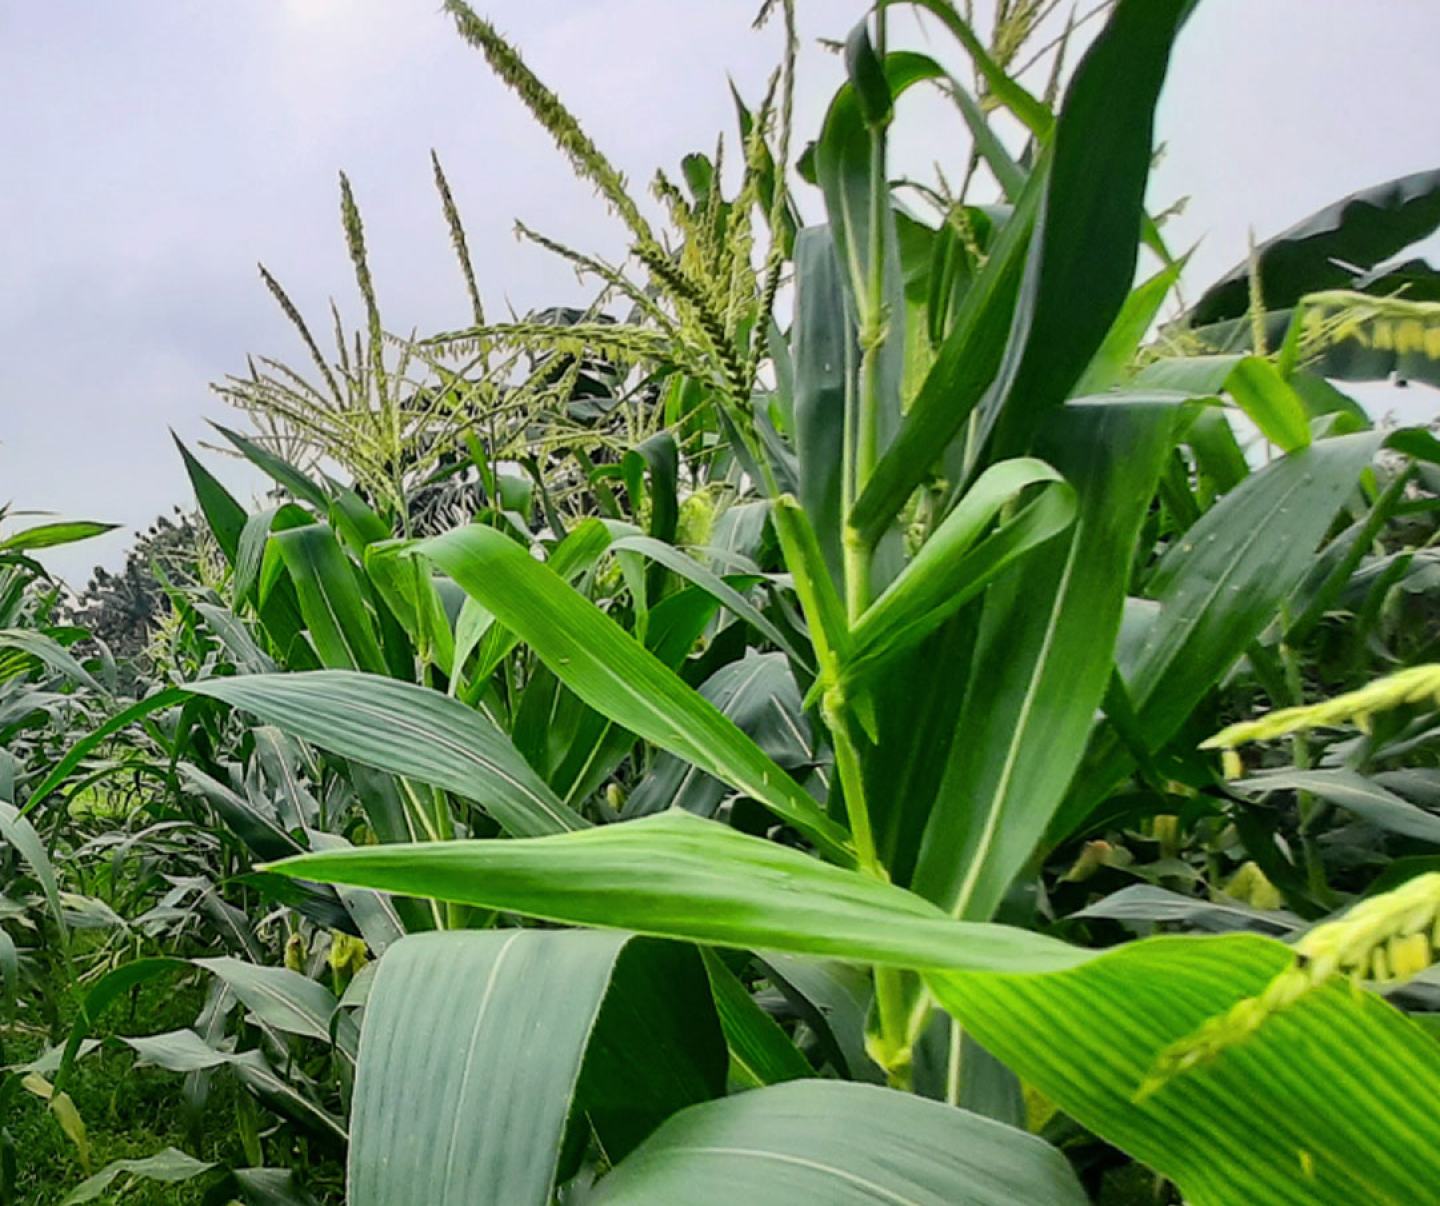 Close up of corn crop in field